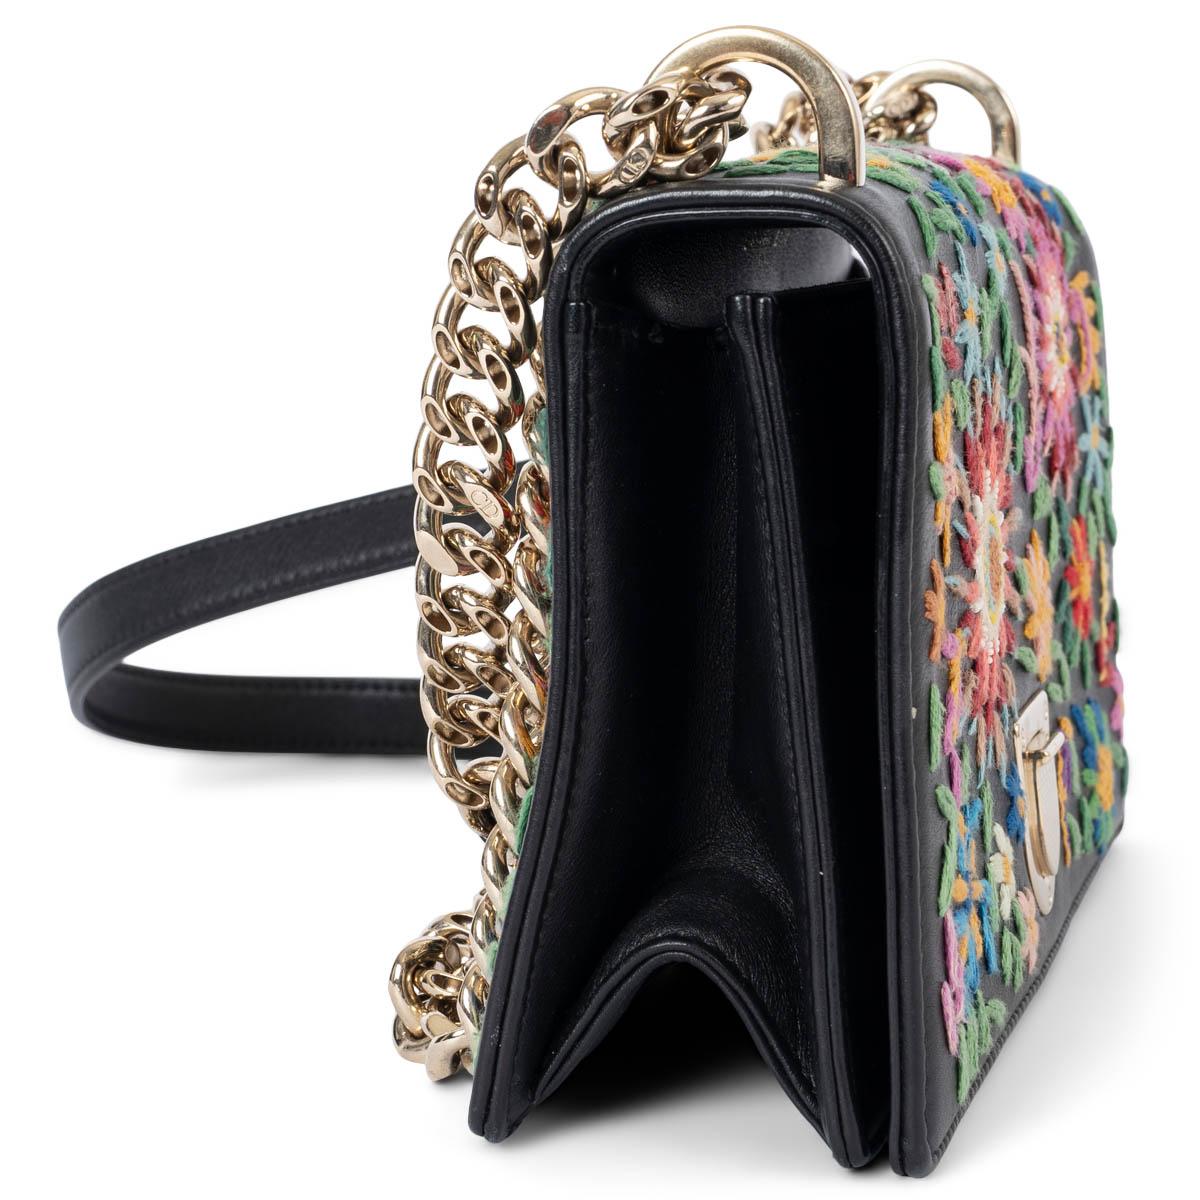 100% authentique Christian Dior Diorama Petit sac à bandoulière à rabat en cuir avec broderie florale multicolore. Il est doté d'une chaîne réglable et d'accessoires en métal doré. Il s'ouvre par une fermeture à poussoir sur le devant et est doublé